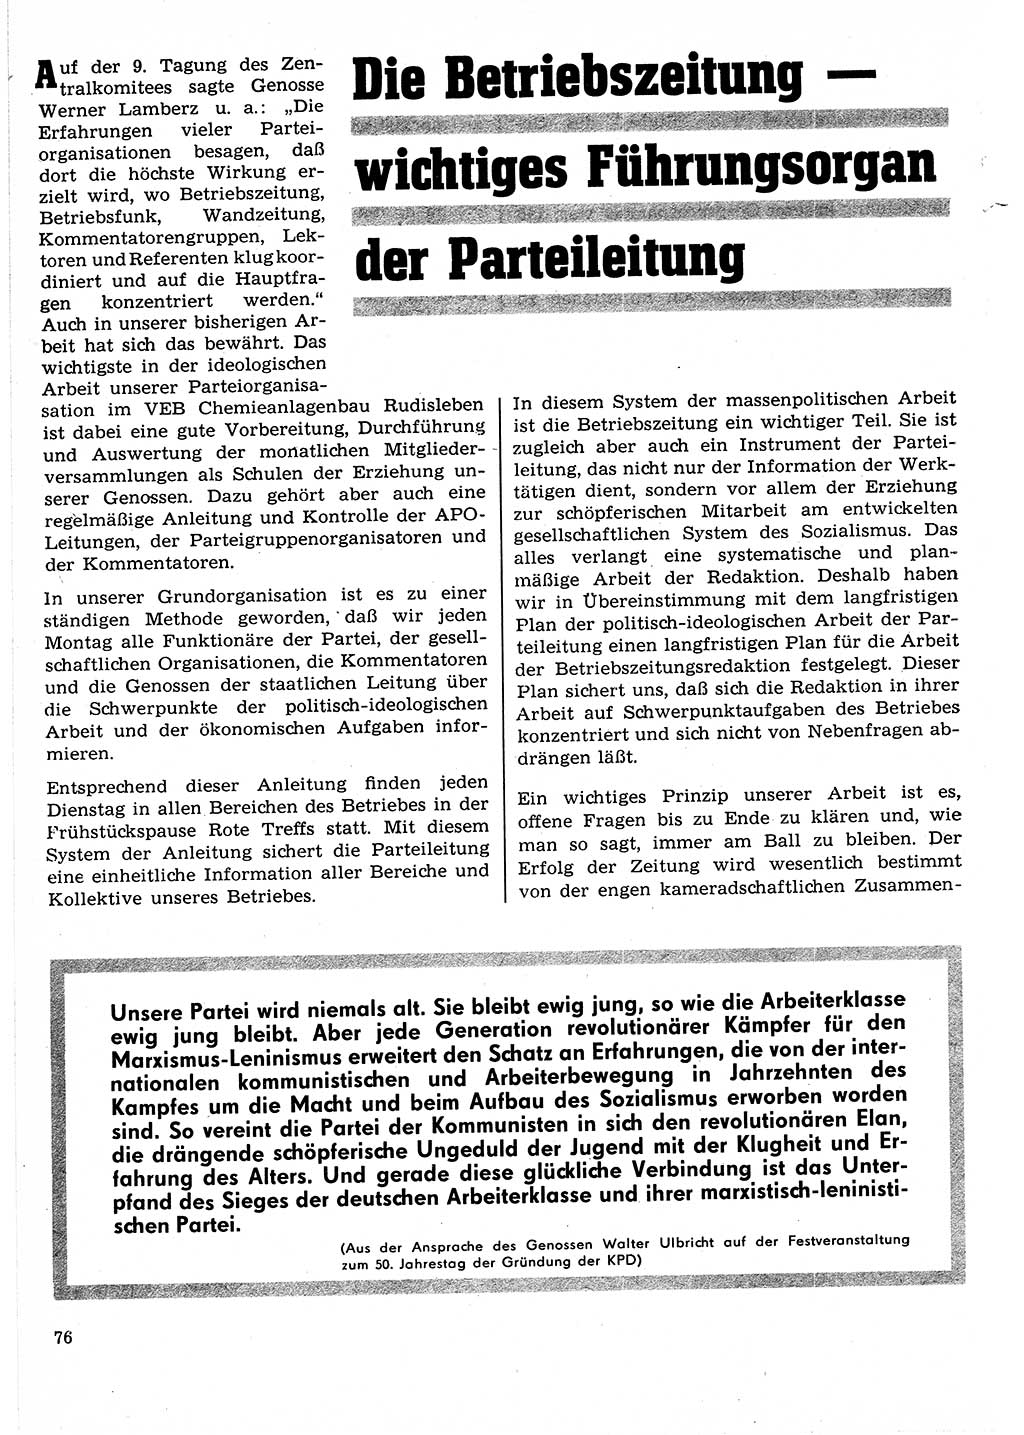 Neuer Weg (NW), Organ des Zentralkomitees (ZK) der SED (Sozialistische Einheitspartei Deutschlands) für Fragen des Parteilebens, 24. Jahrgang [Deutsche Demokratische Republik (DDR)] 1969, Seite 76 (NW ZK SED DDR 1969, S. 76)